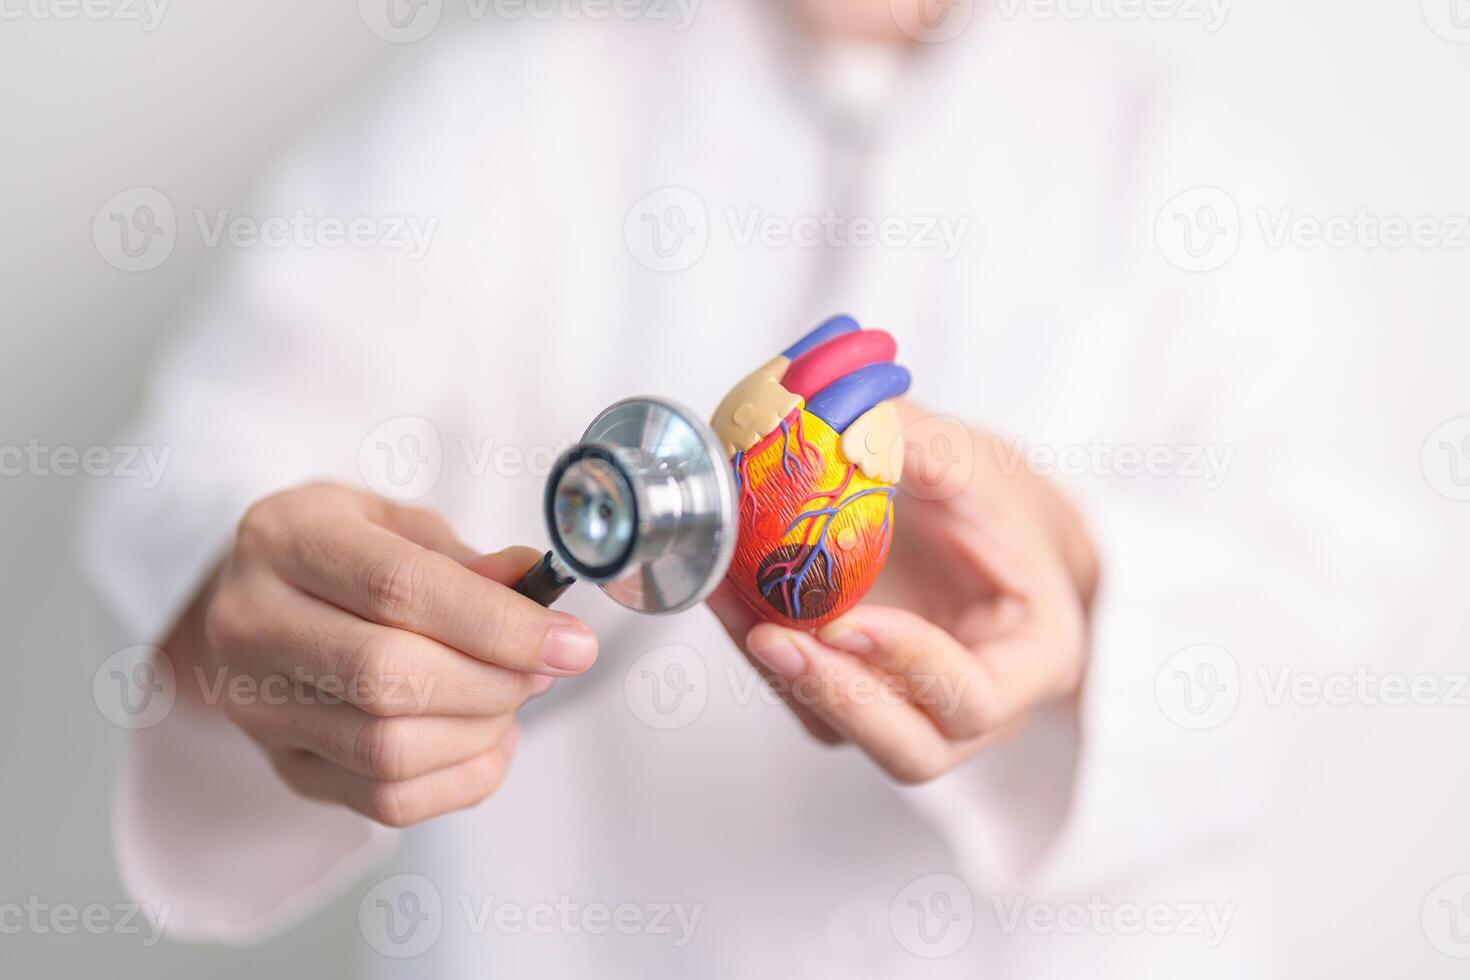 läkare håll hjärta anatomi modell med stetoskop. kardiovaskulär sjukdomar, åderförkalkning, hypertensiv hjärta, valvulär hjärta, aortopulmonell fönster. värld hjärta dag och hälsa försäkring begrepp foto